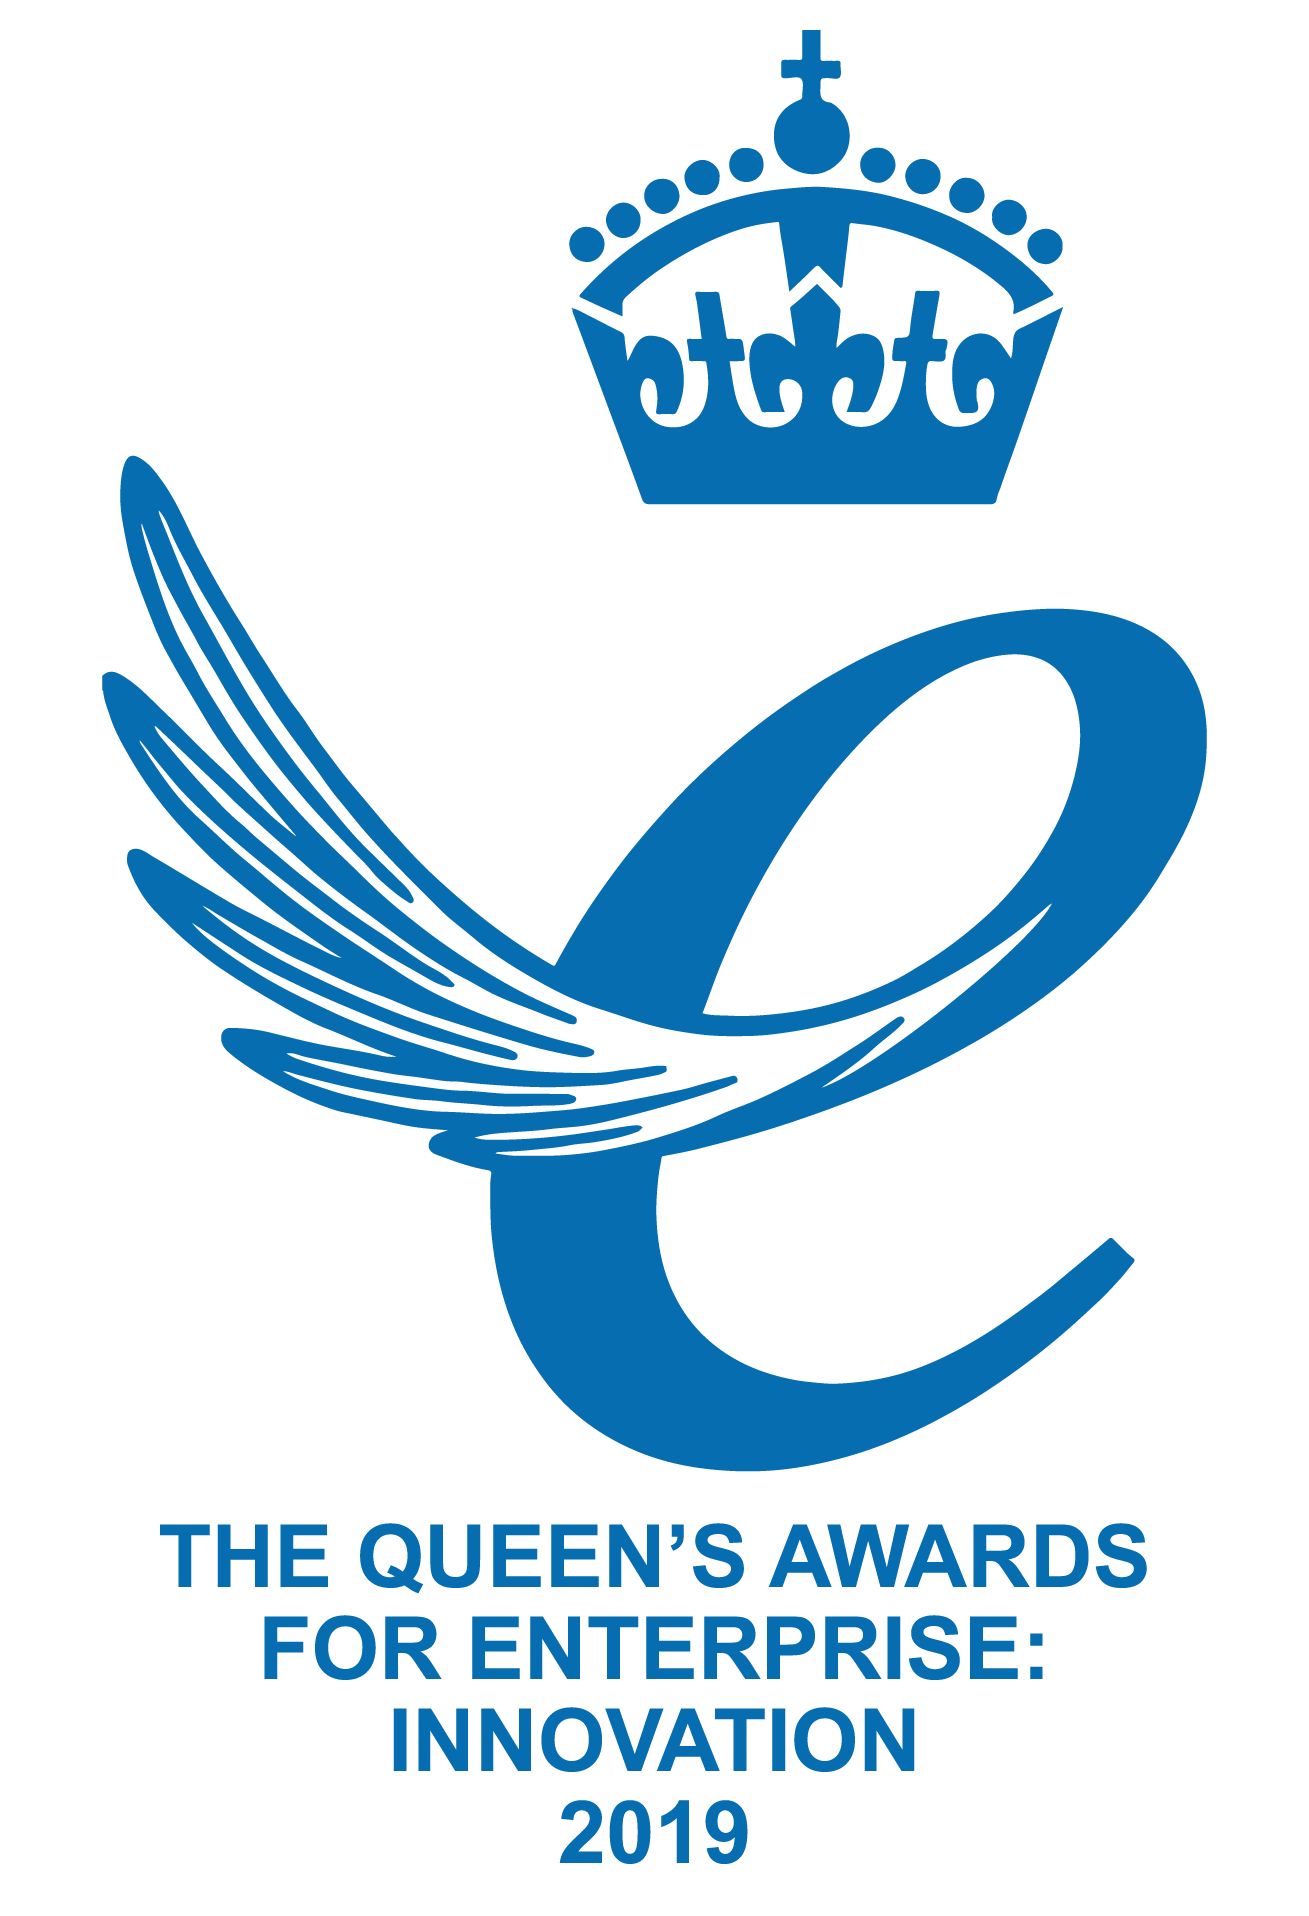 Queen's Awards 2019 - Innovation